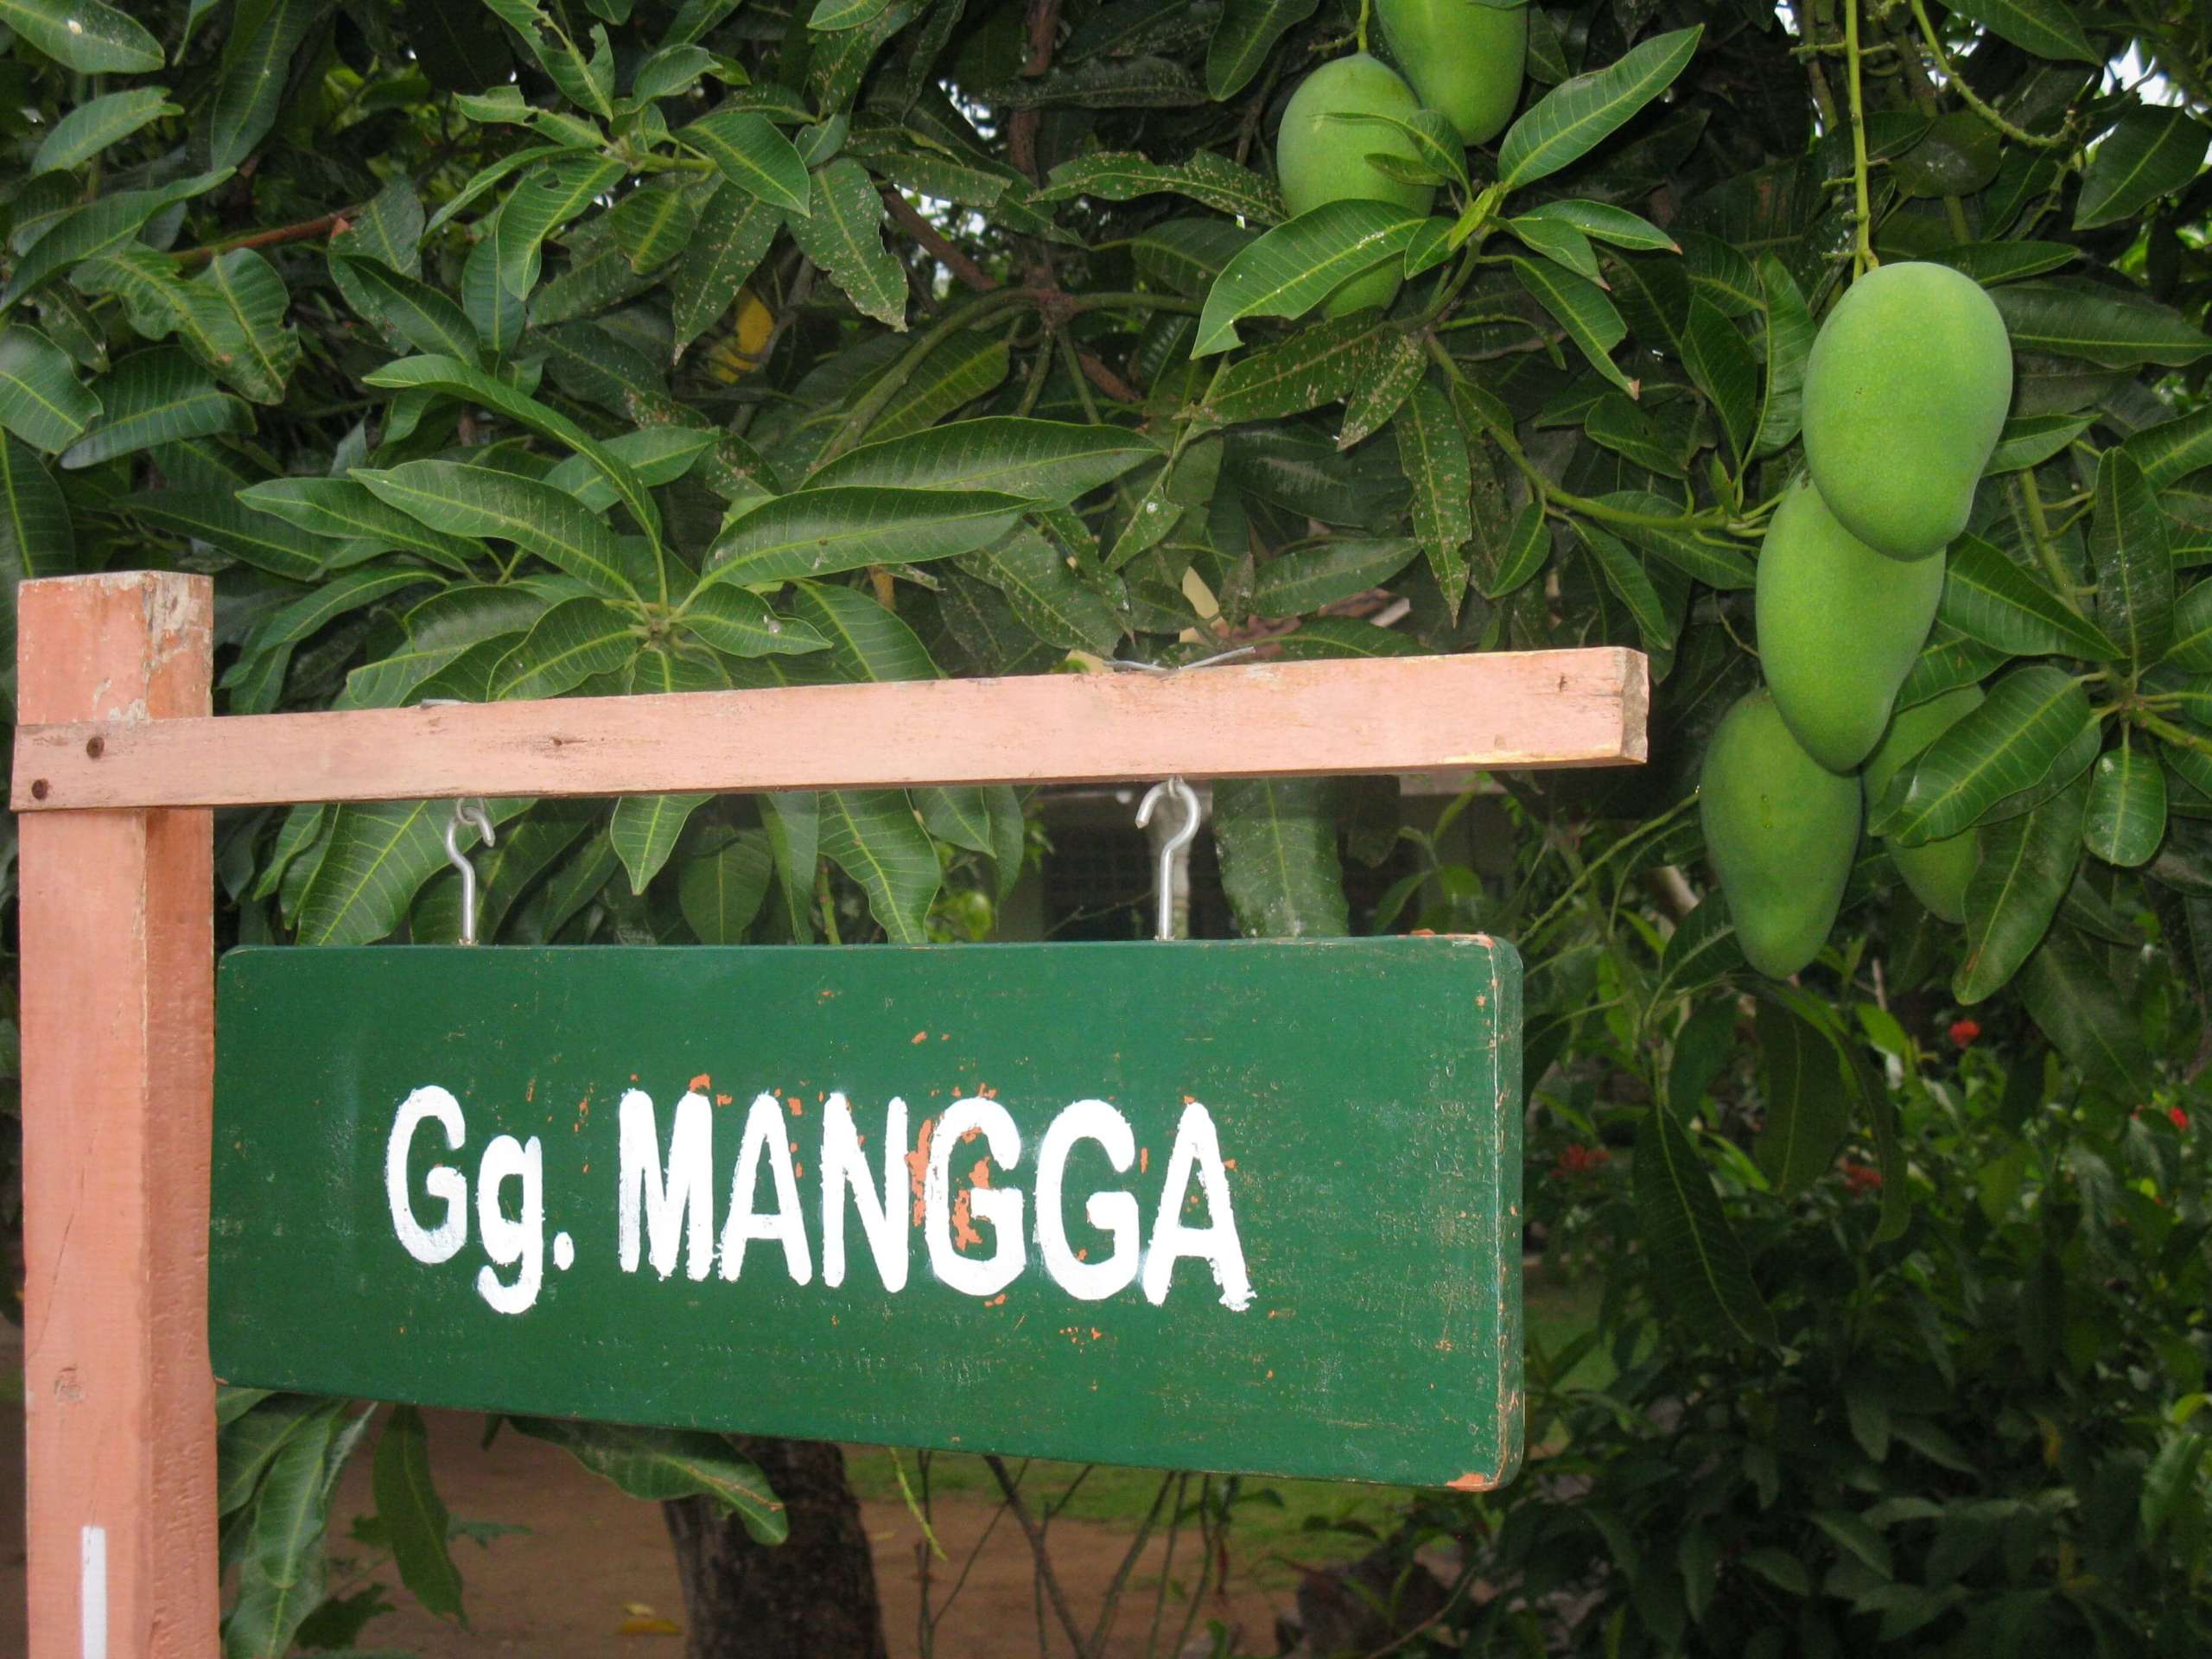 Gg Mangga scaled